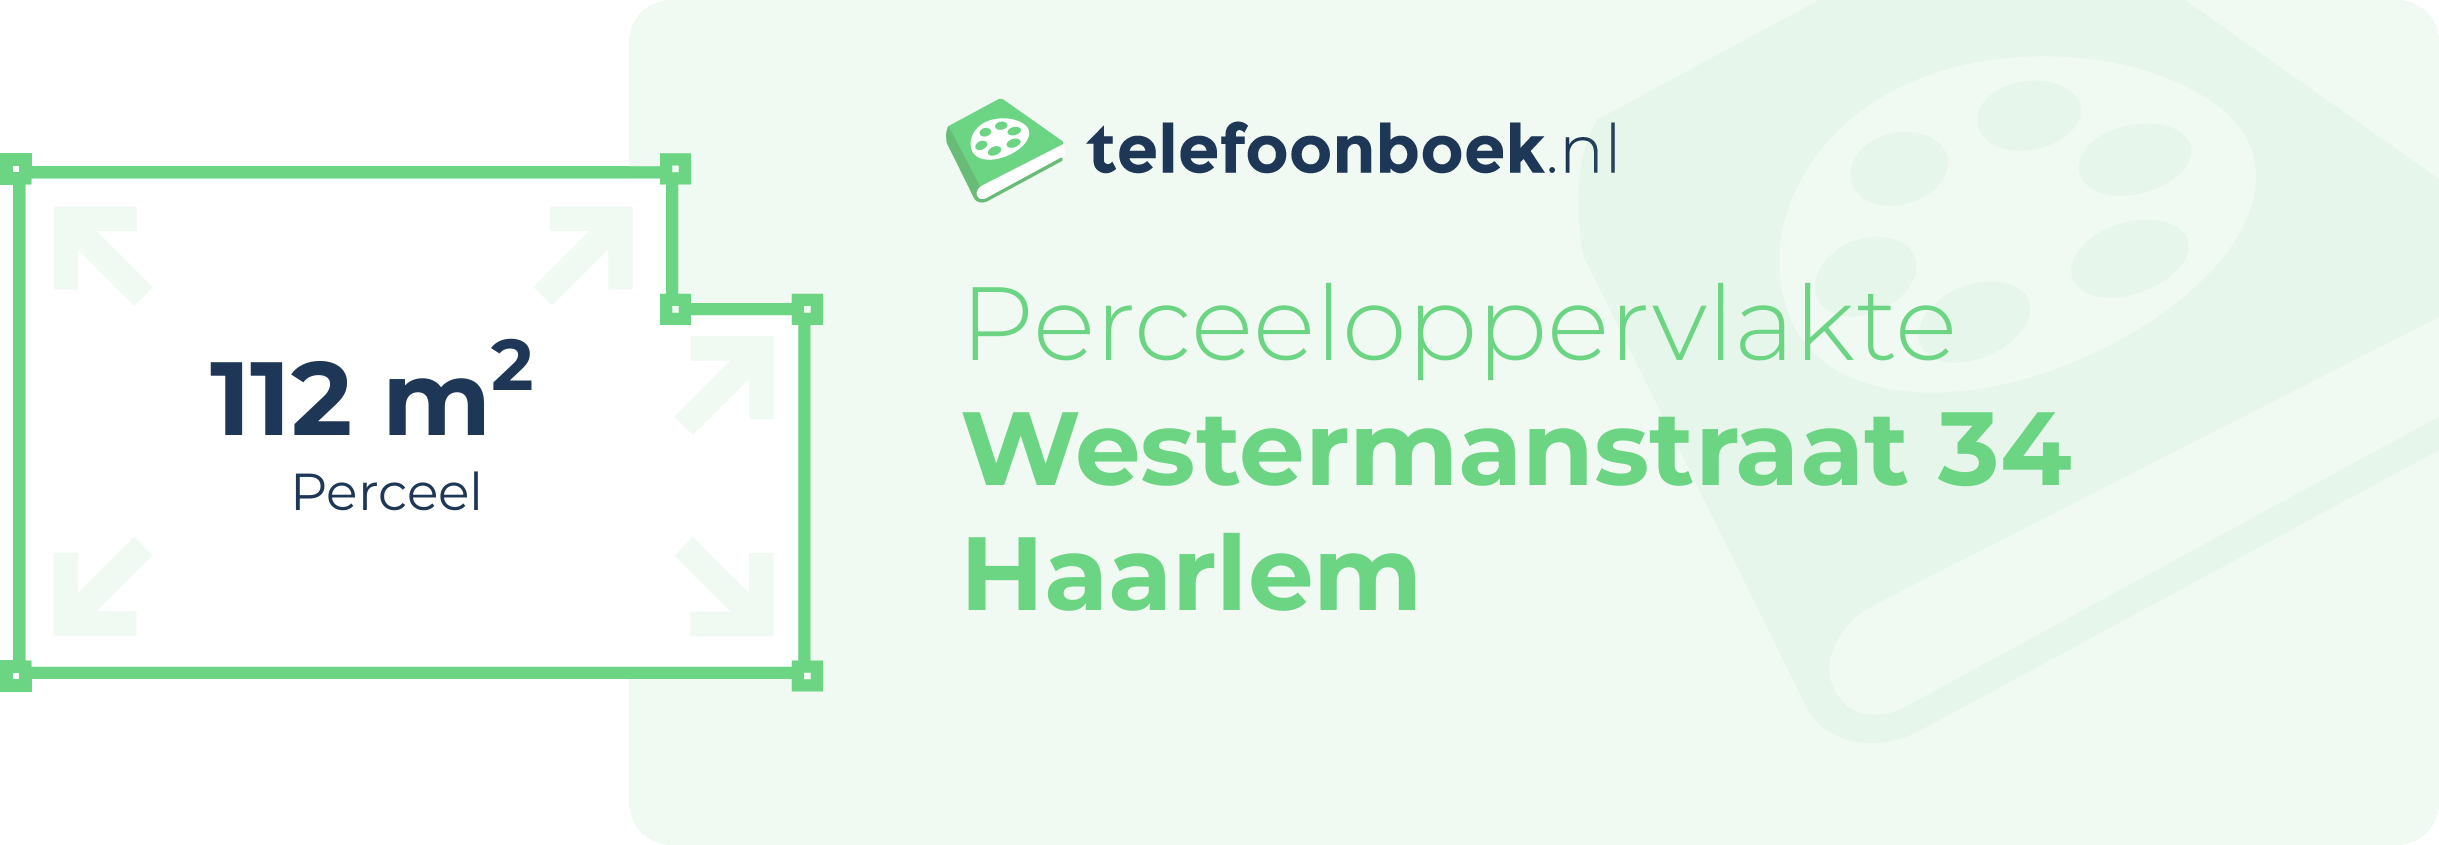 Perceeloppervlakte Westermanstraat 34 Haarlem